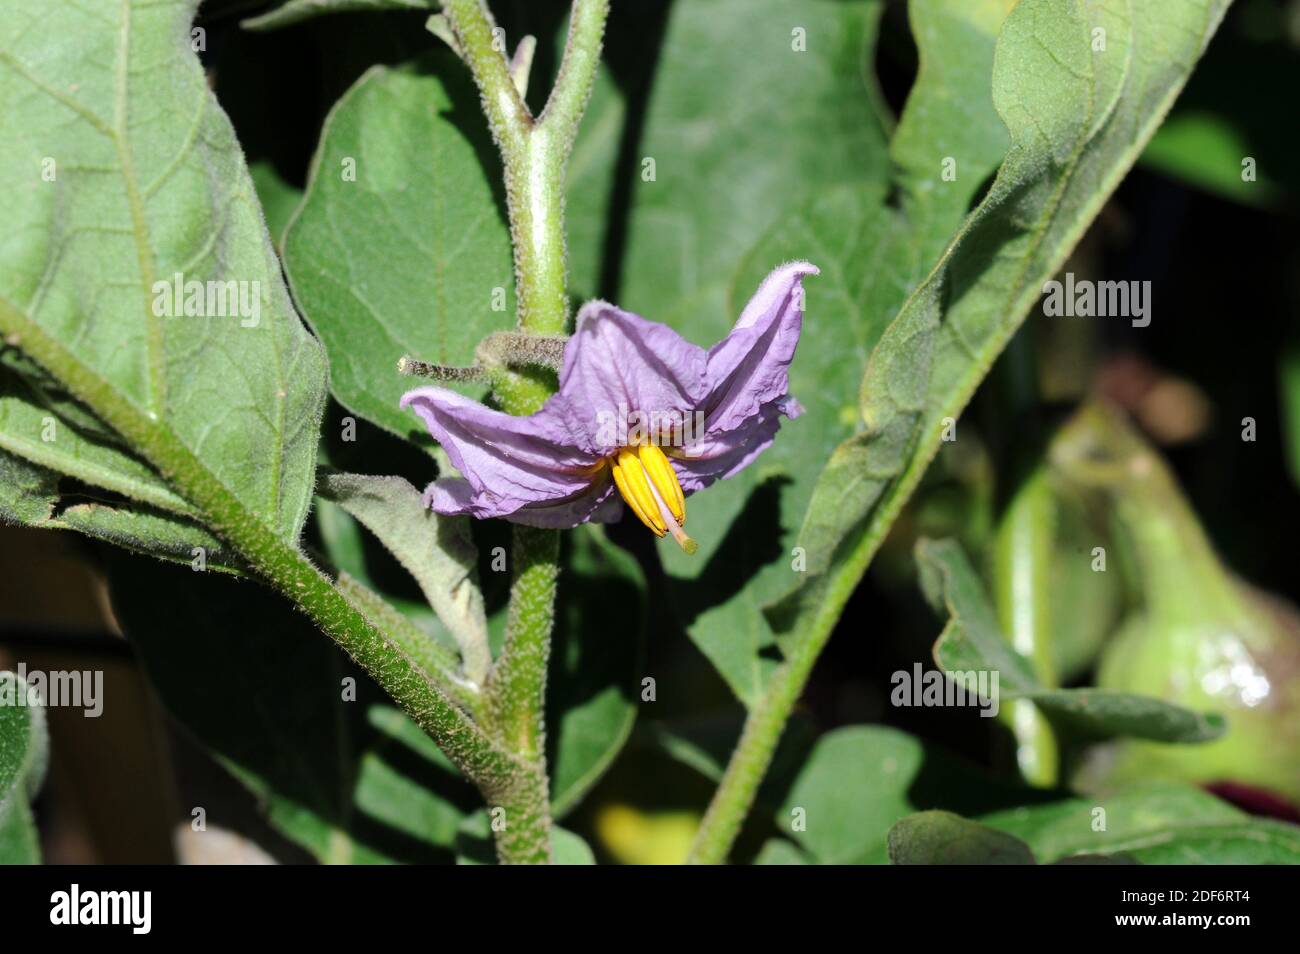 La berenjena o berenjena (Solanum melongena) es una hierba anual nativa del sudeste asiático. Sus frutos (bayas) son comestibles. Detalle de flor. Foto de stock